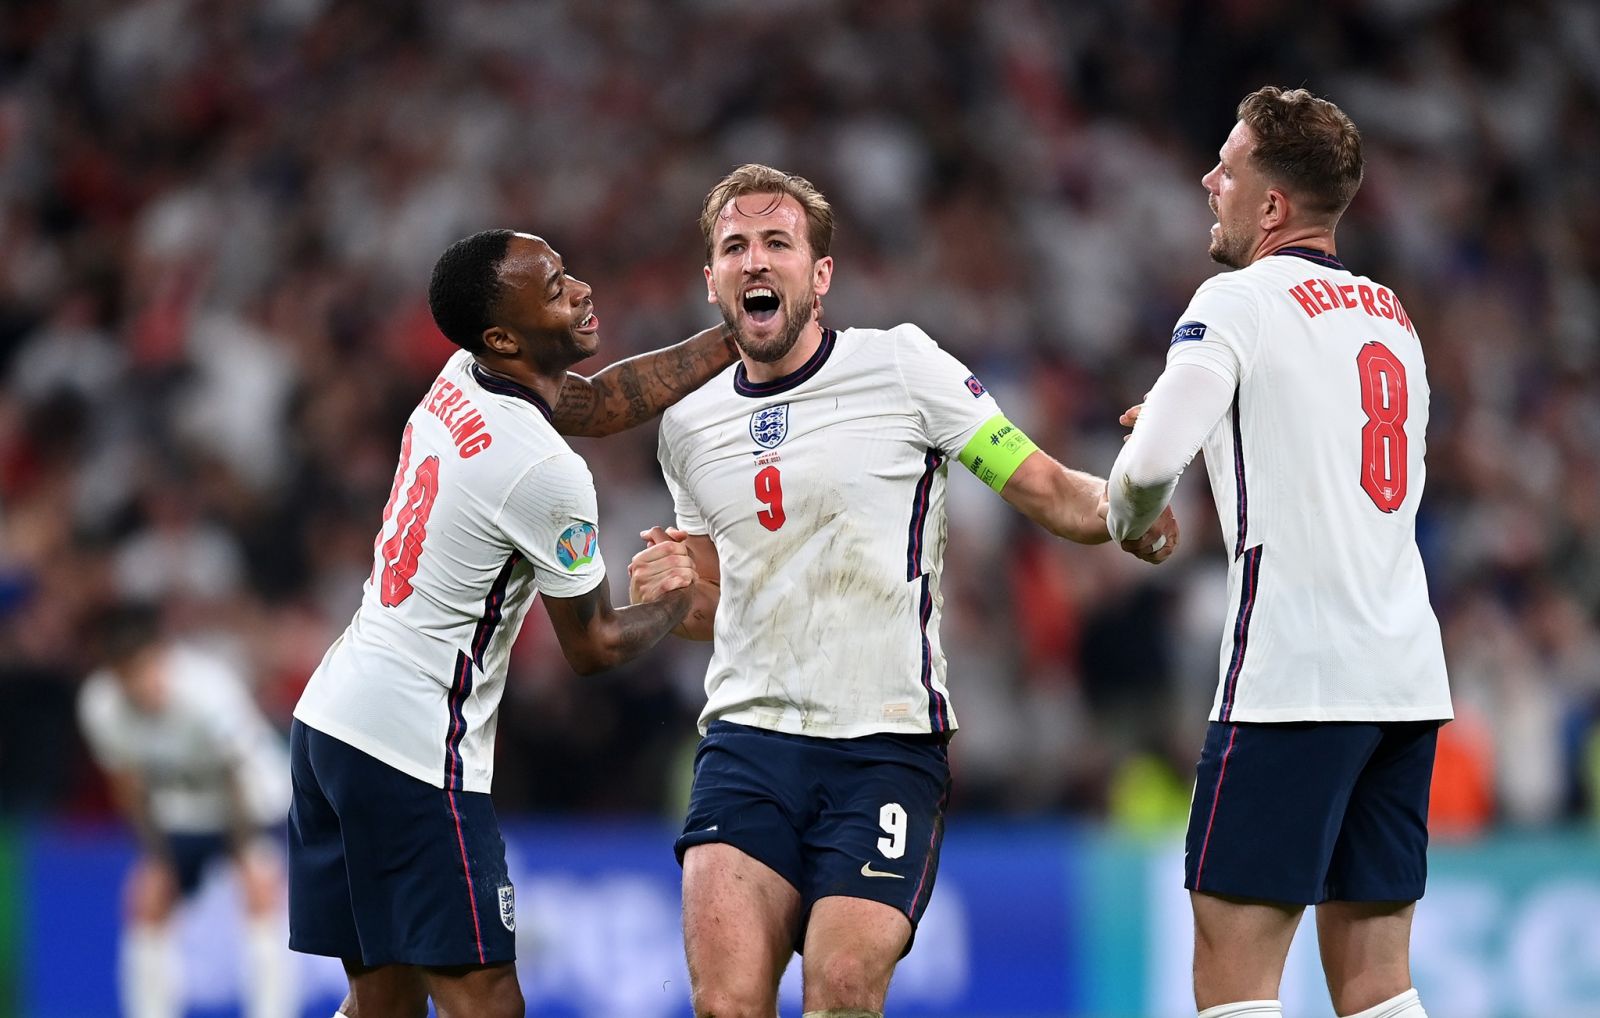 Англия благодаря спорному пенальти дожала Данию в полуфинале Евро, фото - УЕФА